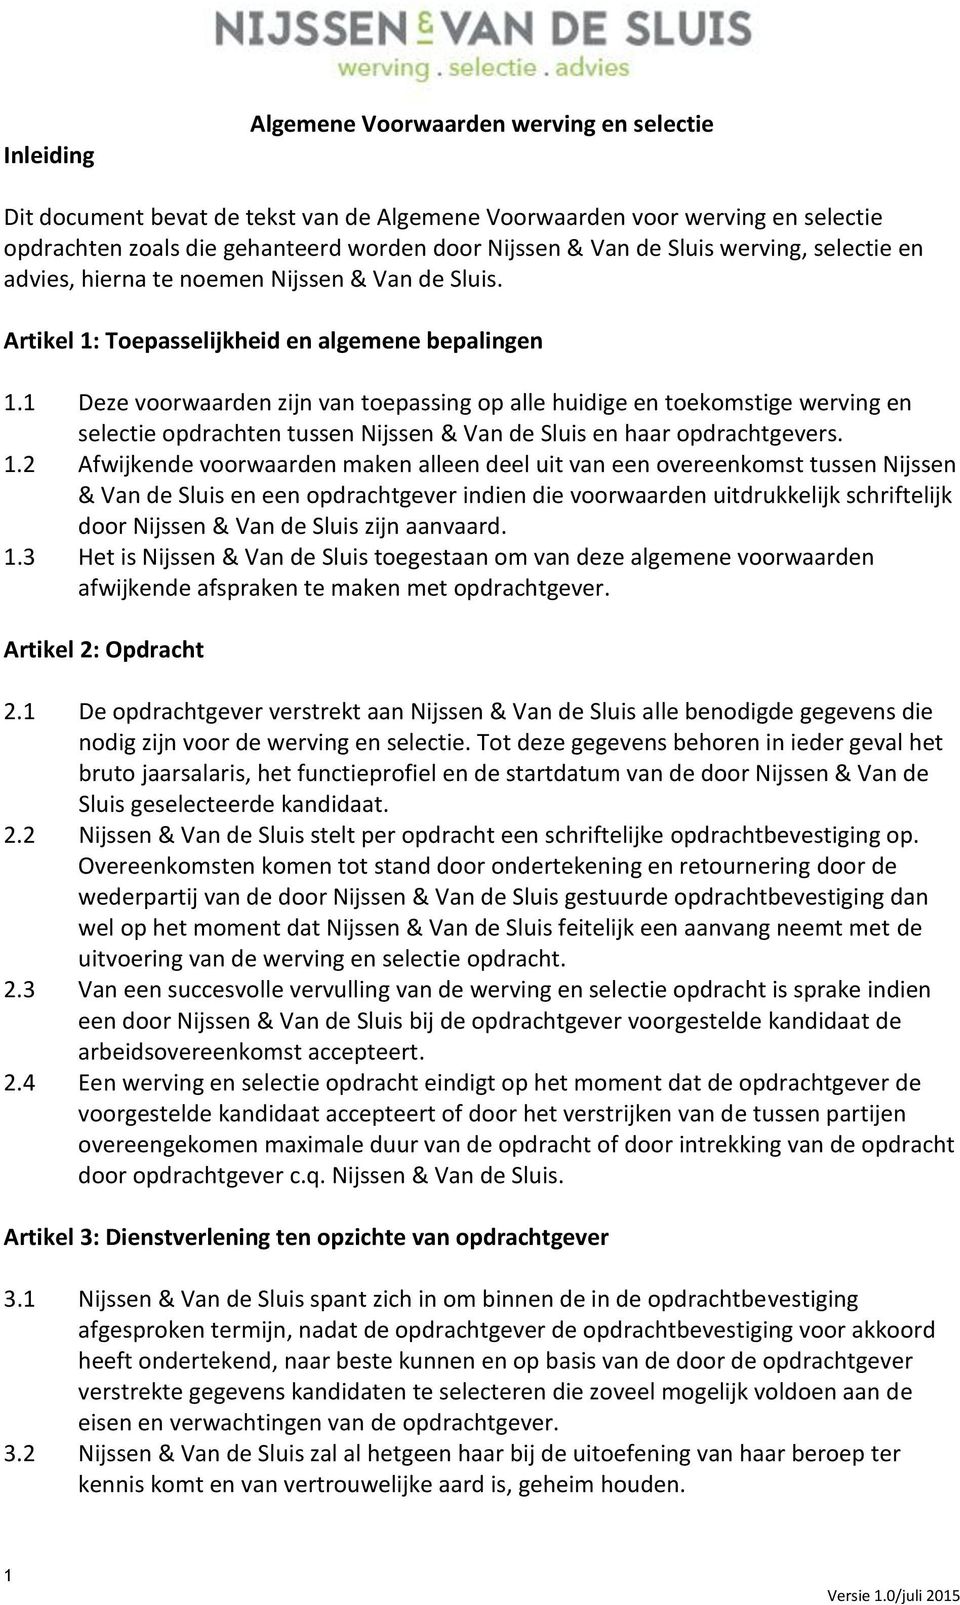 1 Deze voorwaarden zijn van toepassing op alle huidige en toekomstige werving en selectie opdrachten tussen Nijssen & Van de Sluis en haar opdrachtgevers. 1.